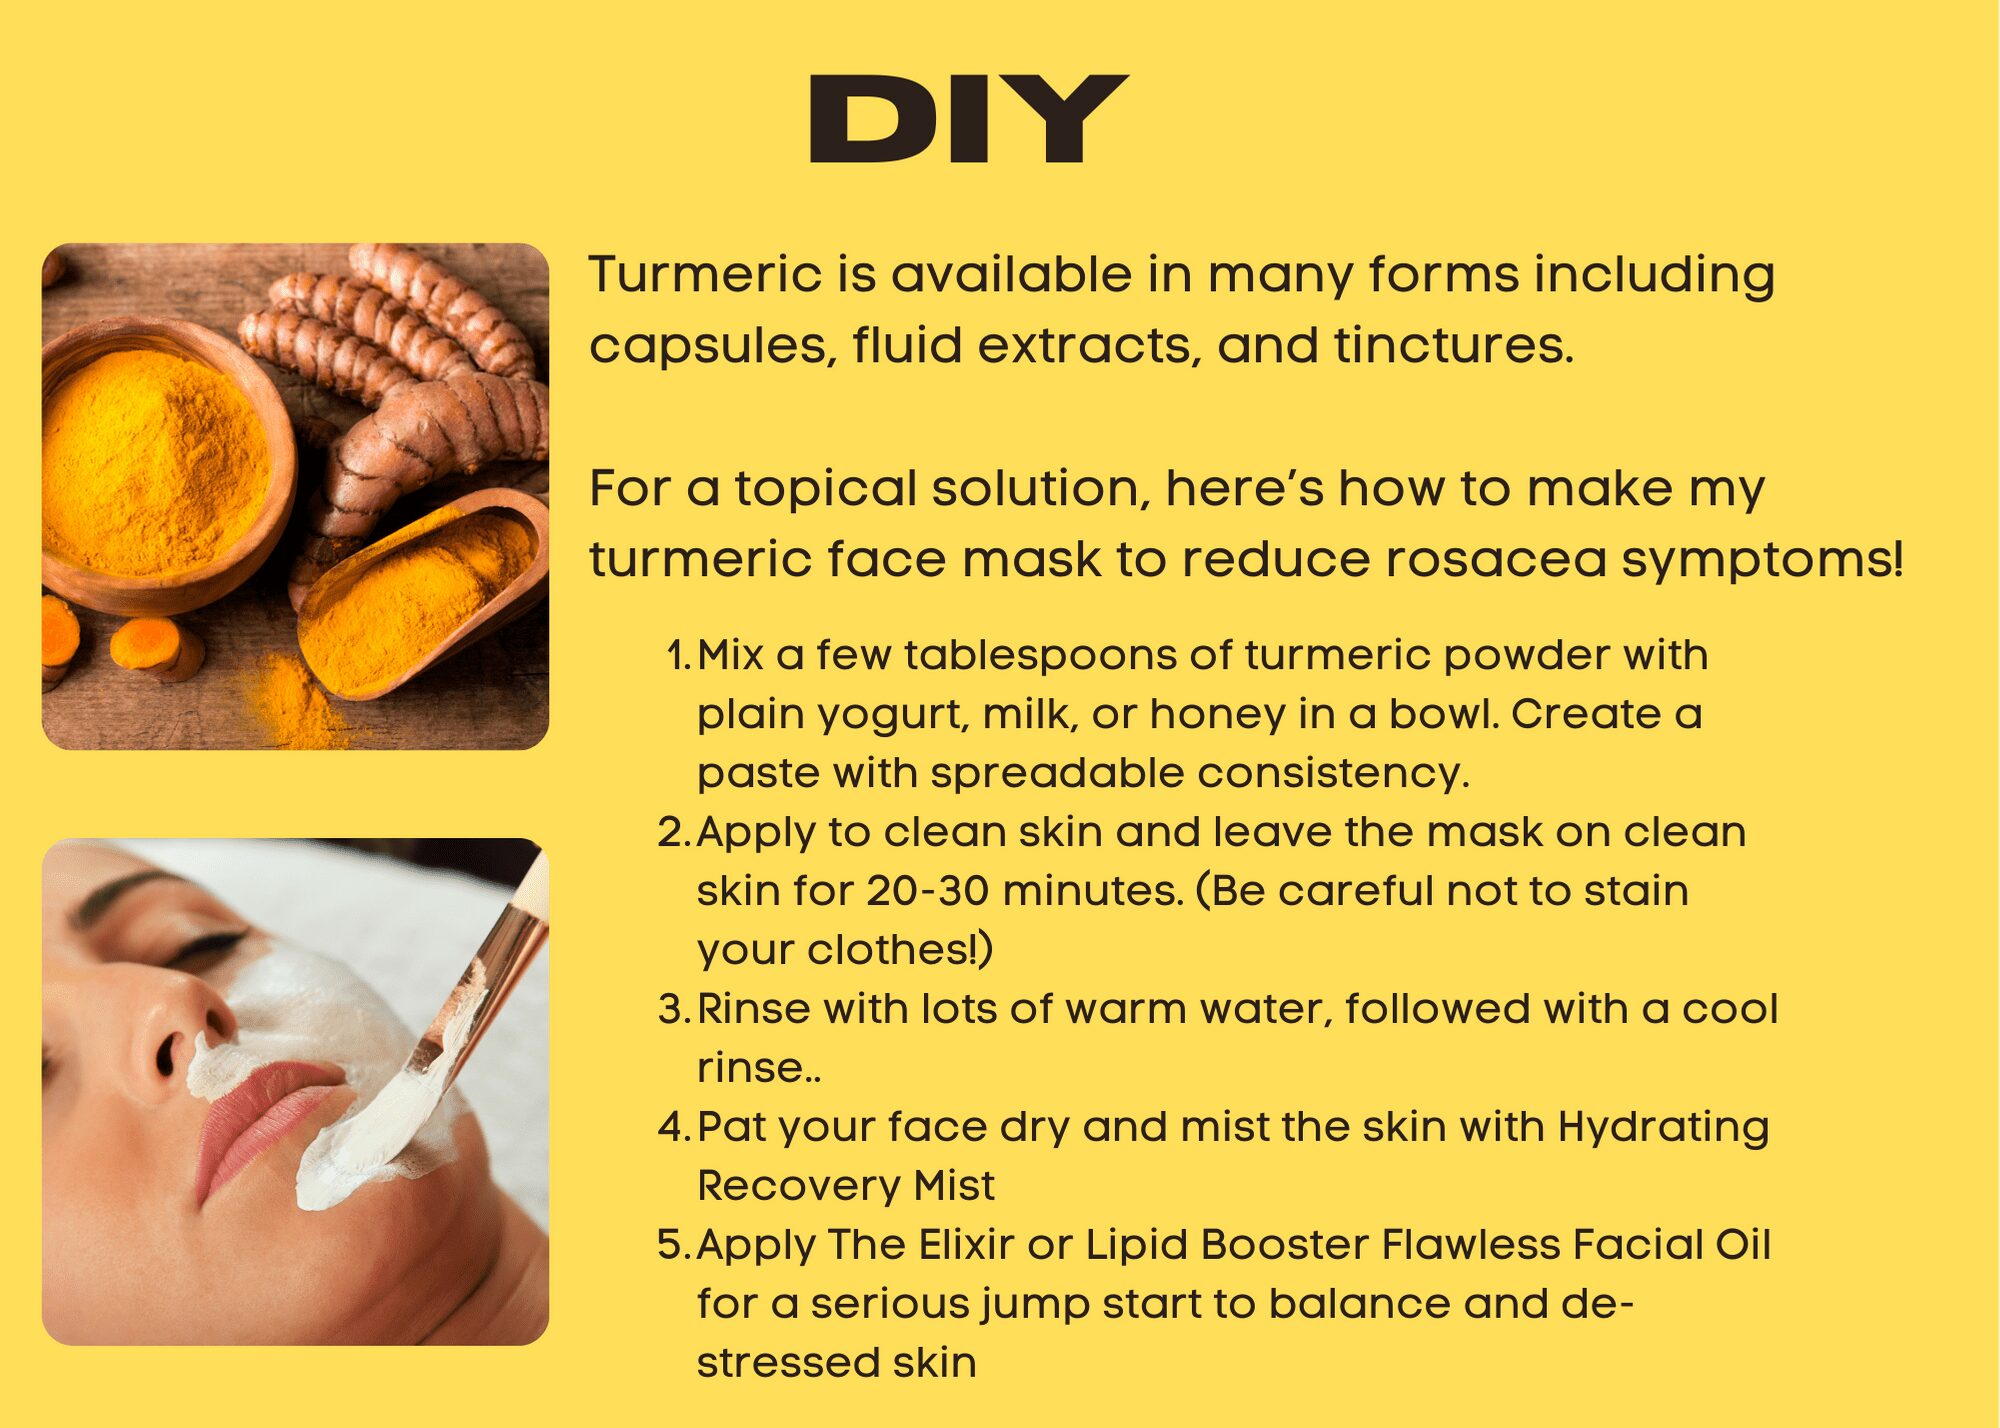 DIY Turmeric Face mask to de-stress skin